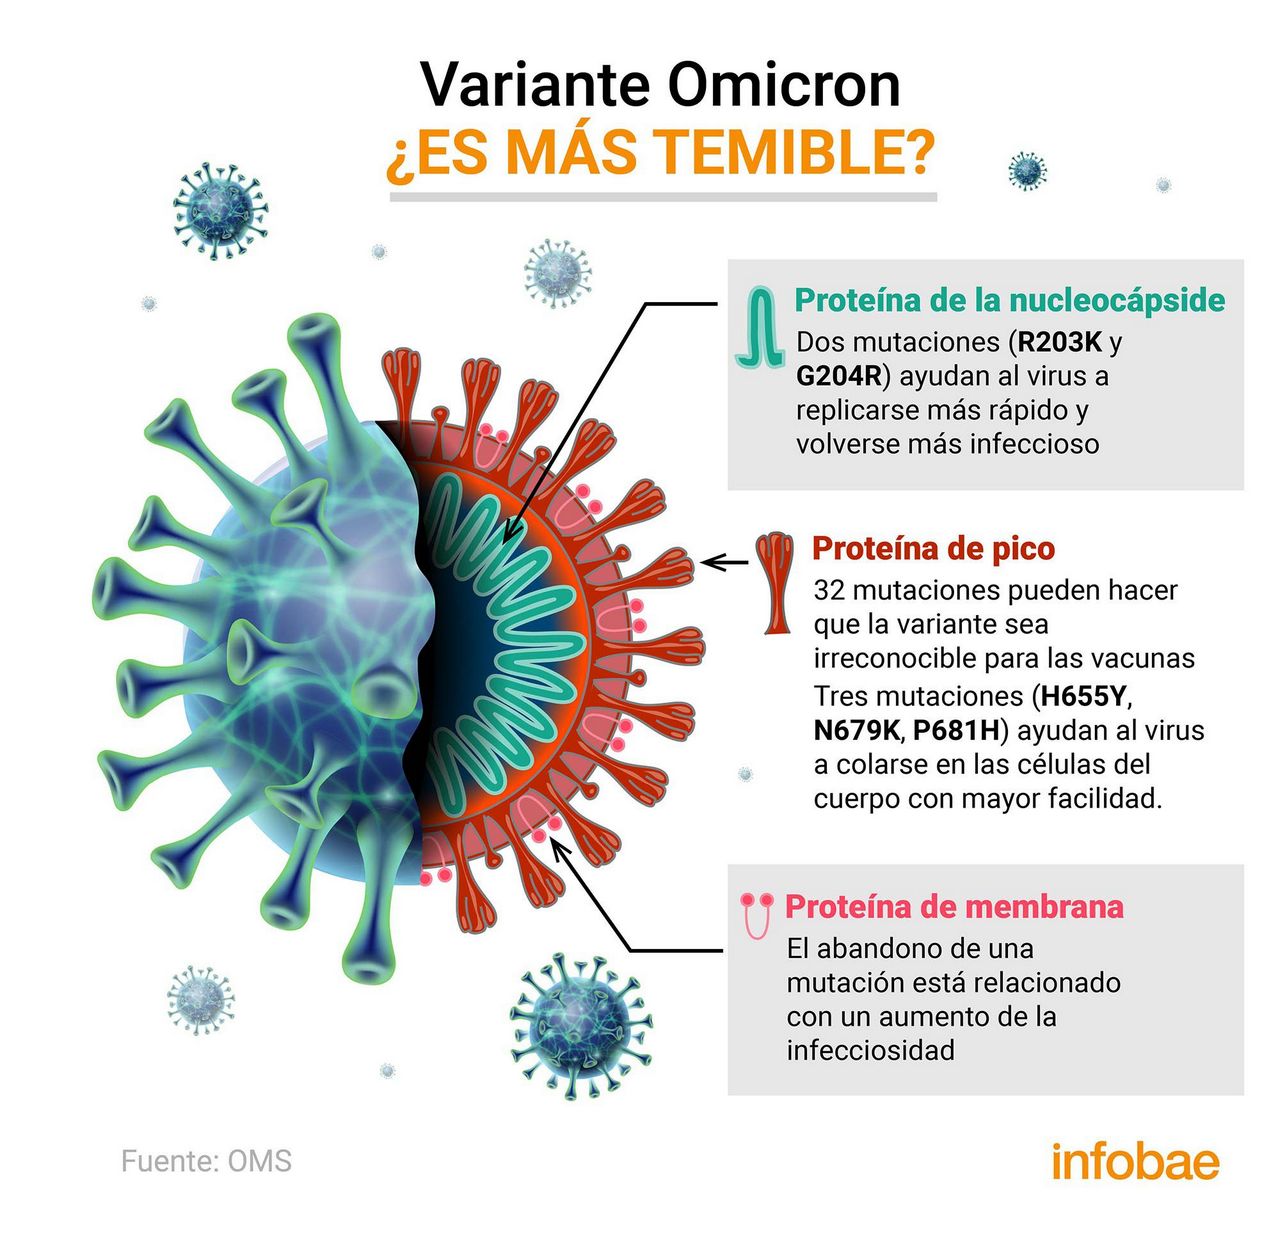 La variante omicron se desarrolla para evitar anticuerpos y vacunas4